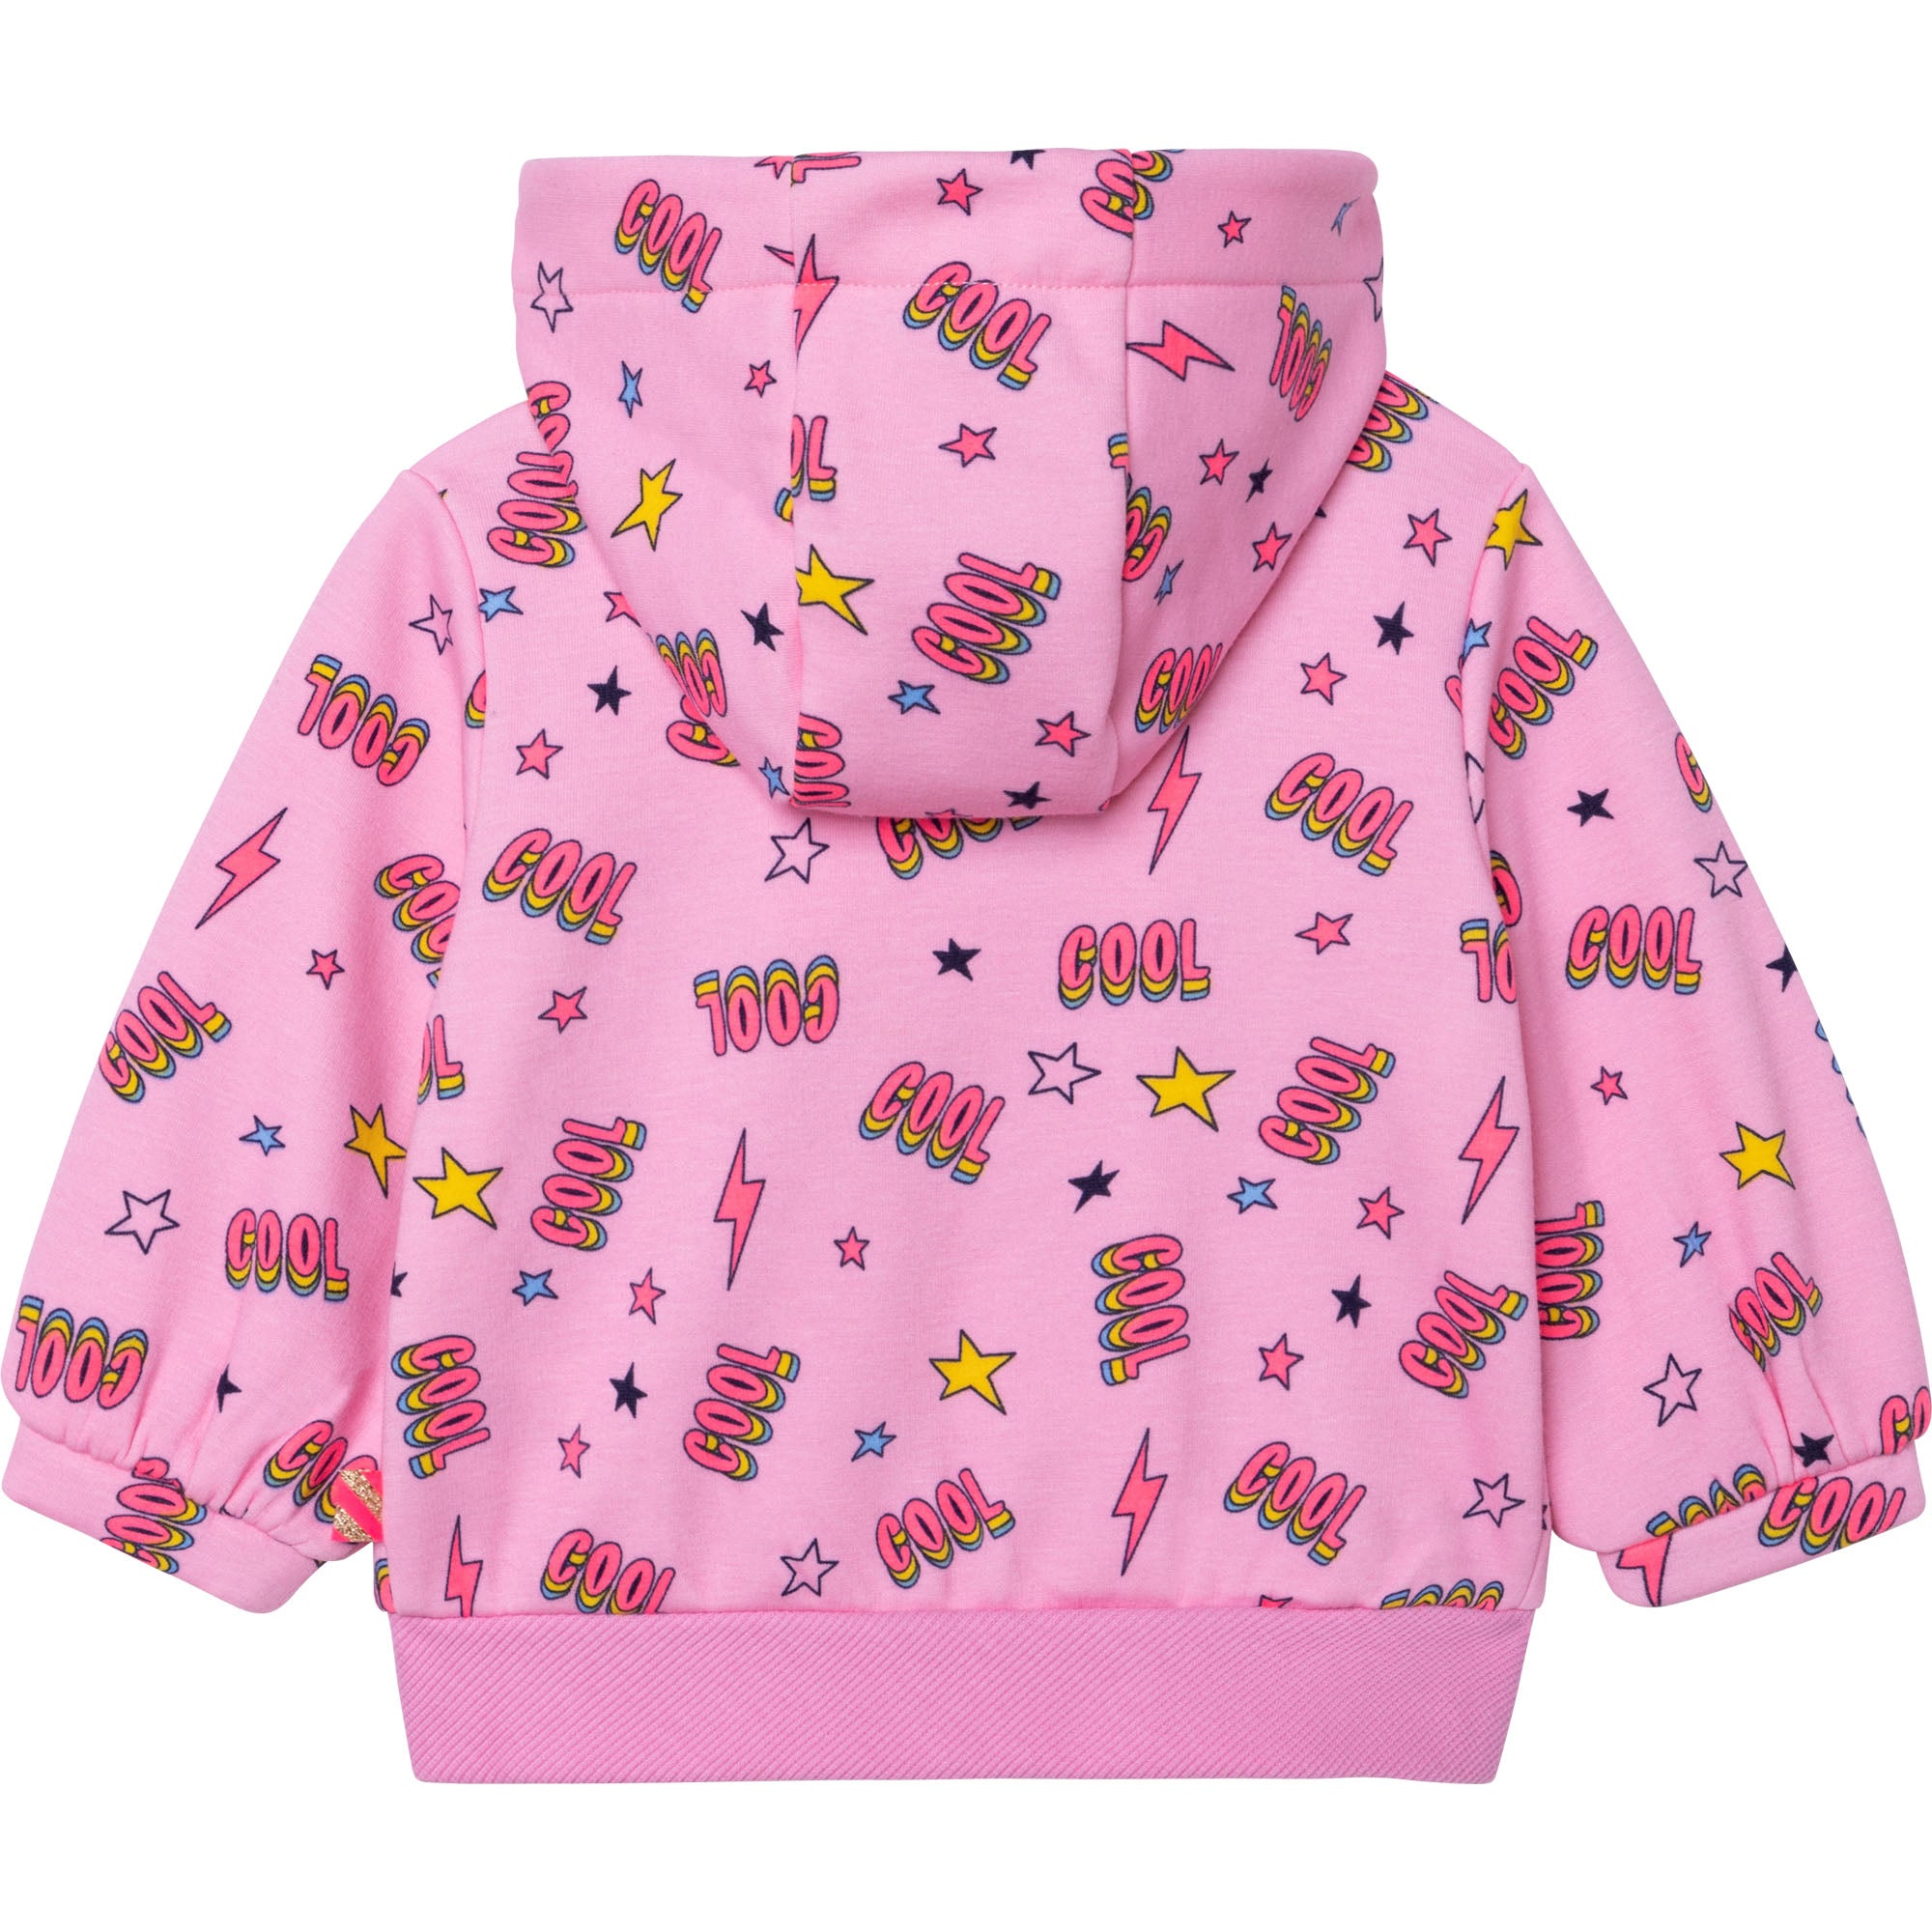 Baby Girls Pink Printing Cardigan